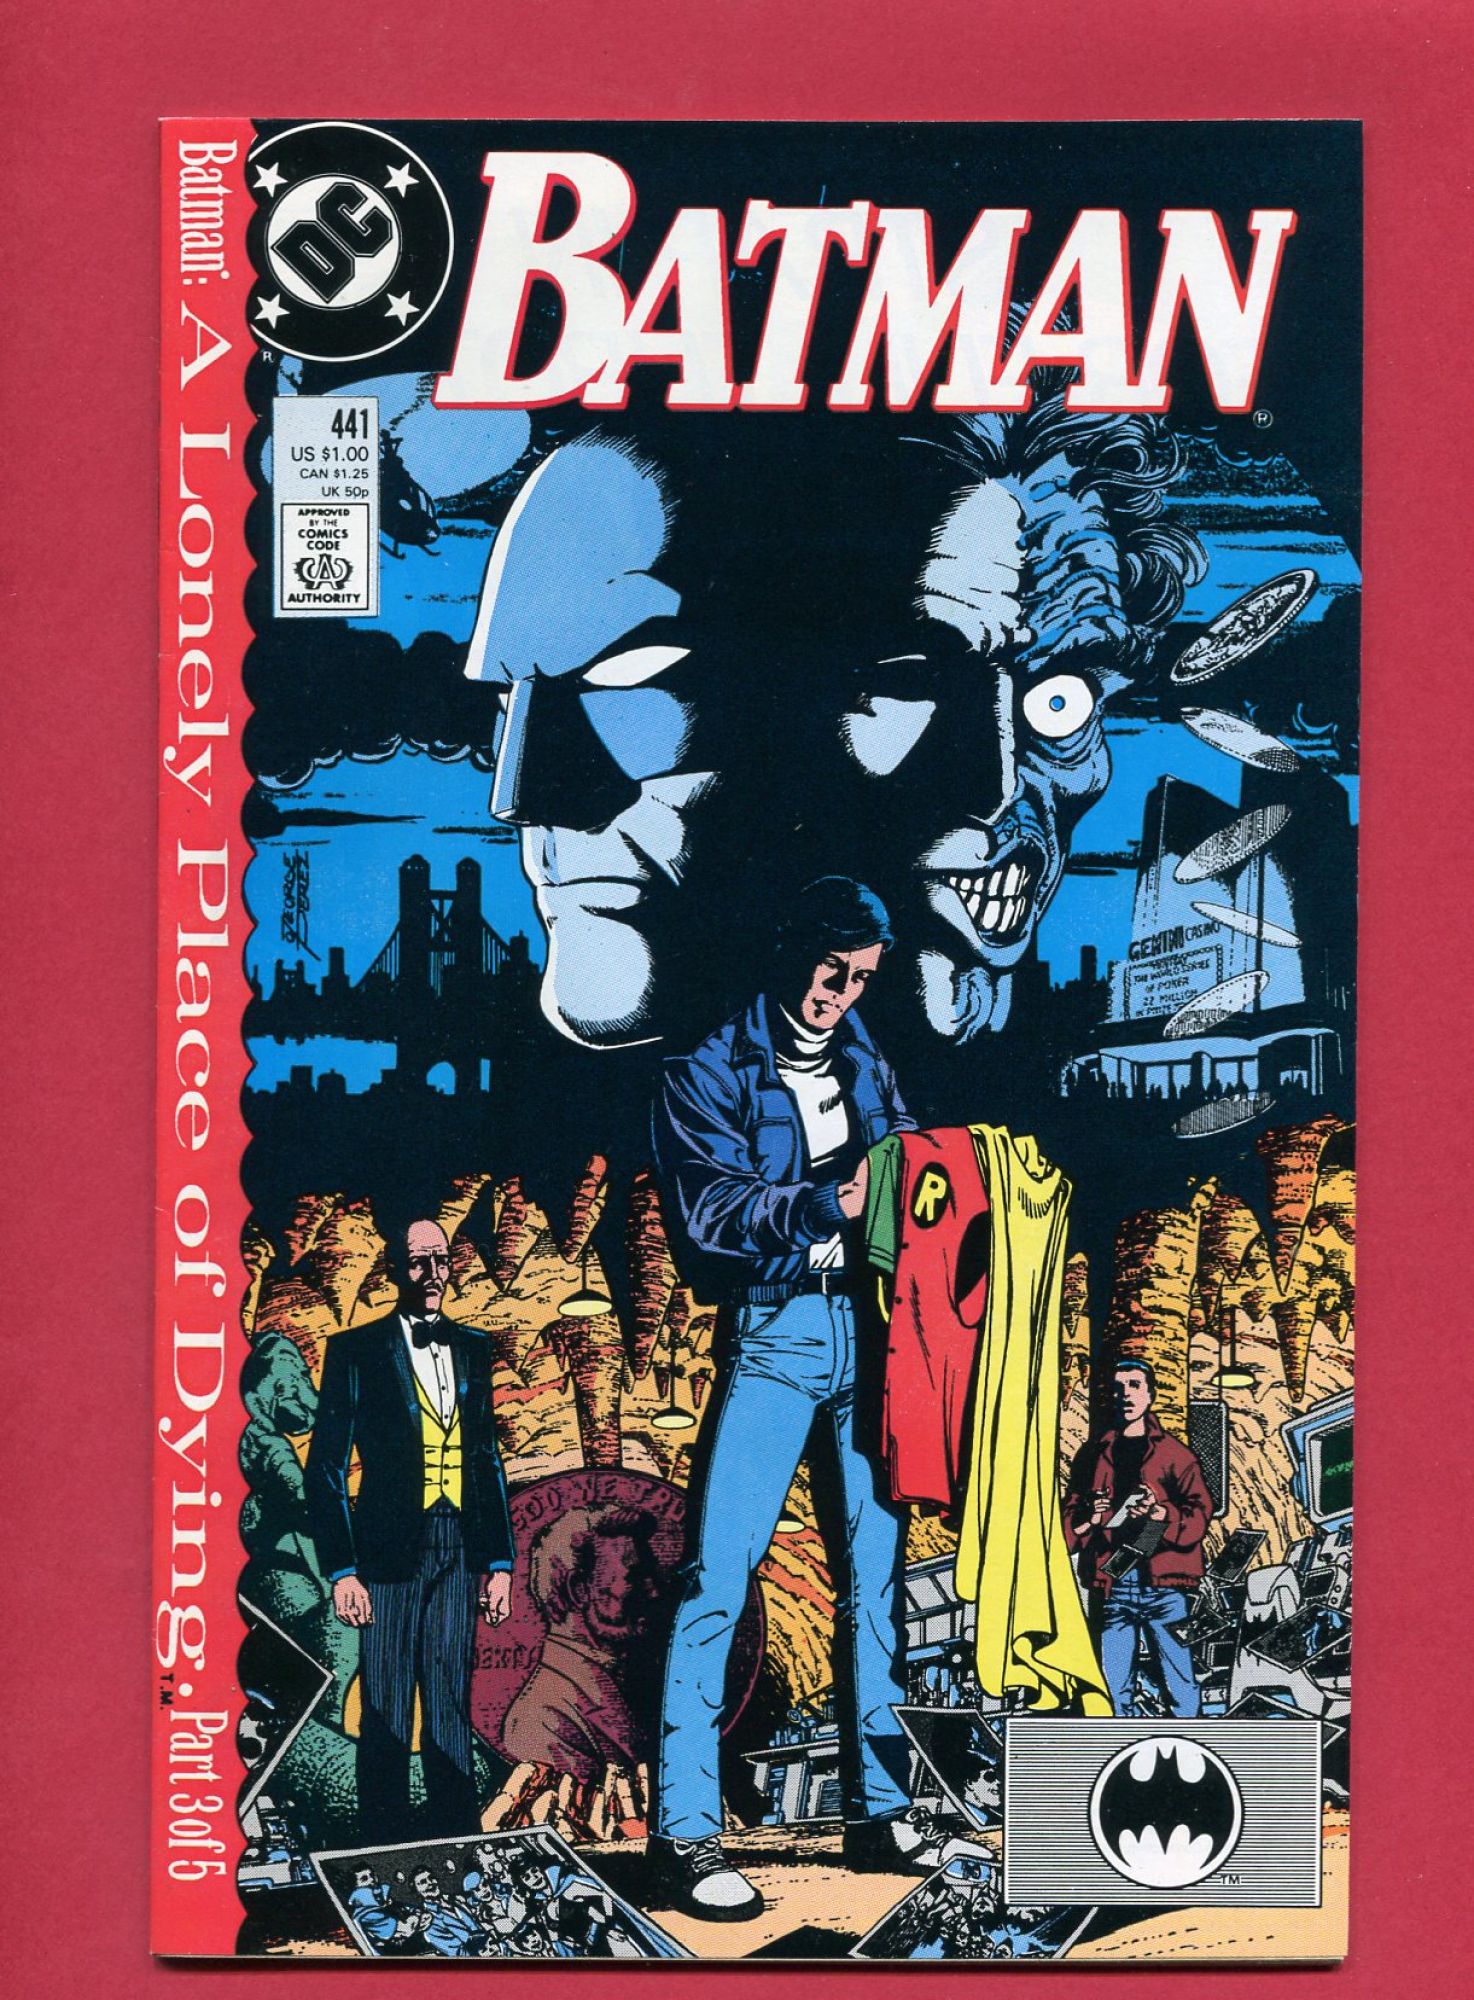 Batman #441, Nov 1989, 9.4 NM